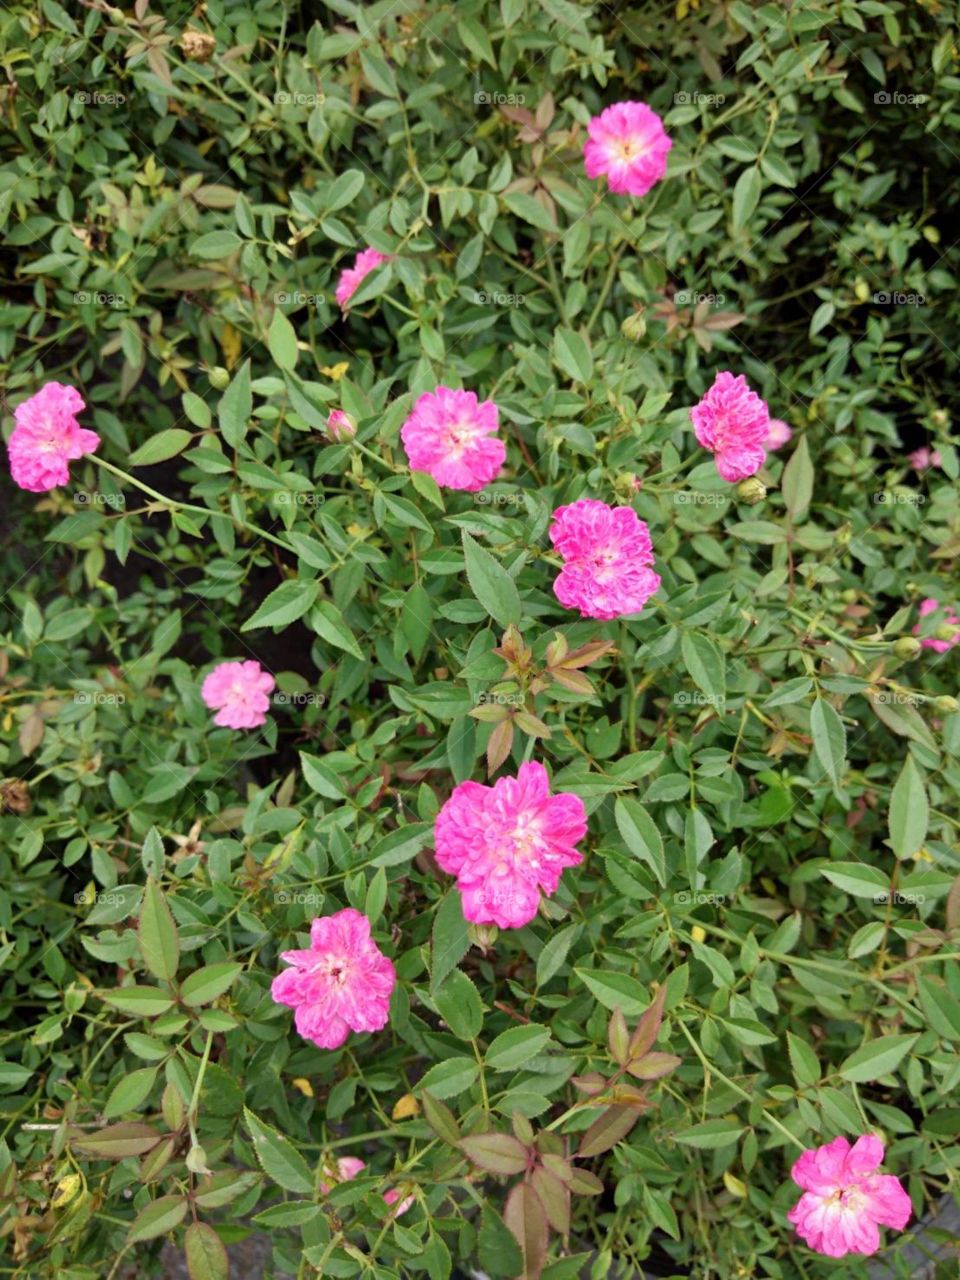 Dwarf Pink rose in the garden.